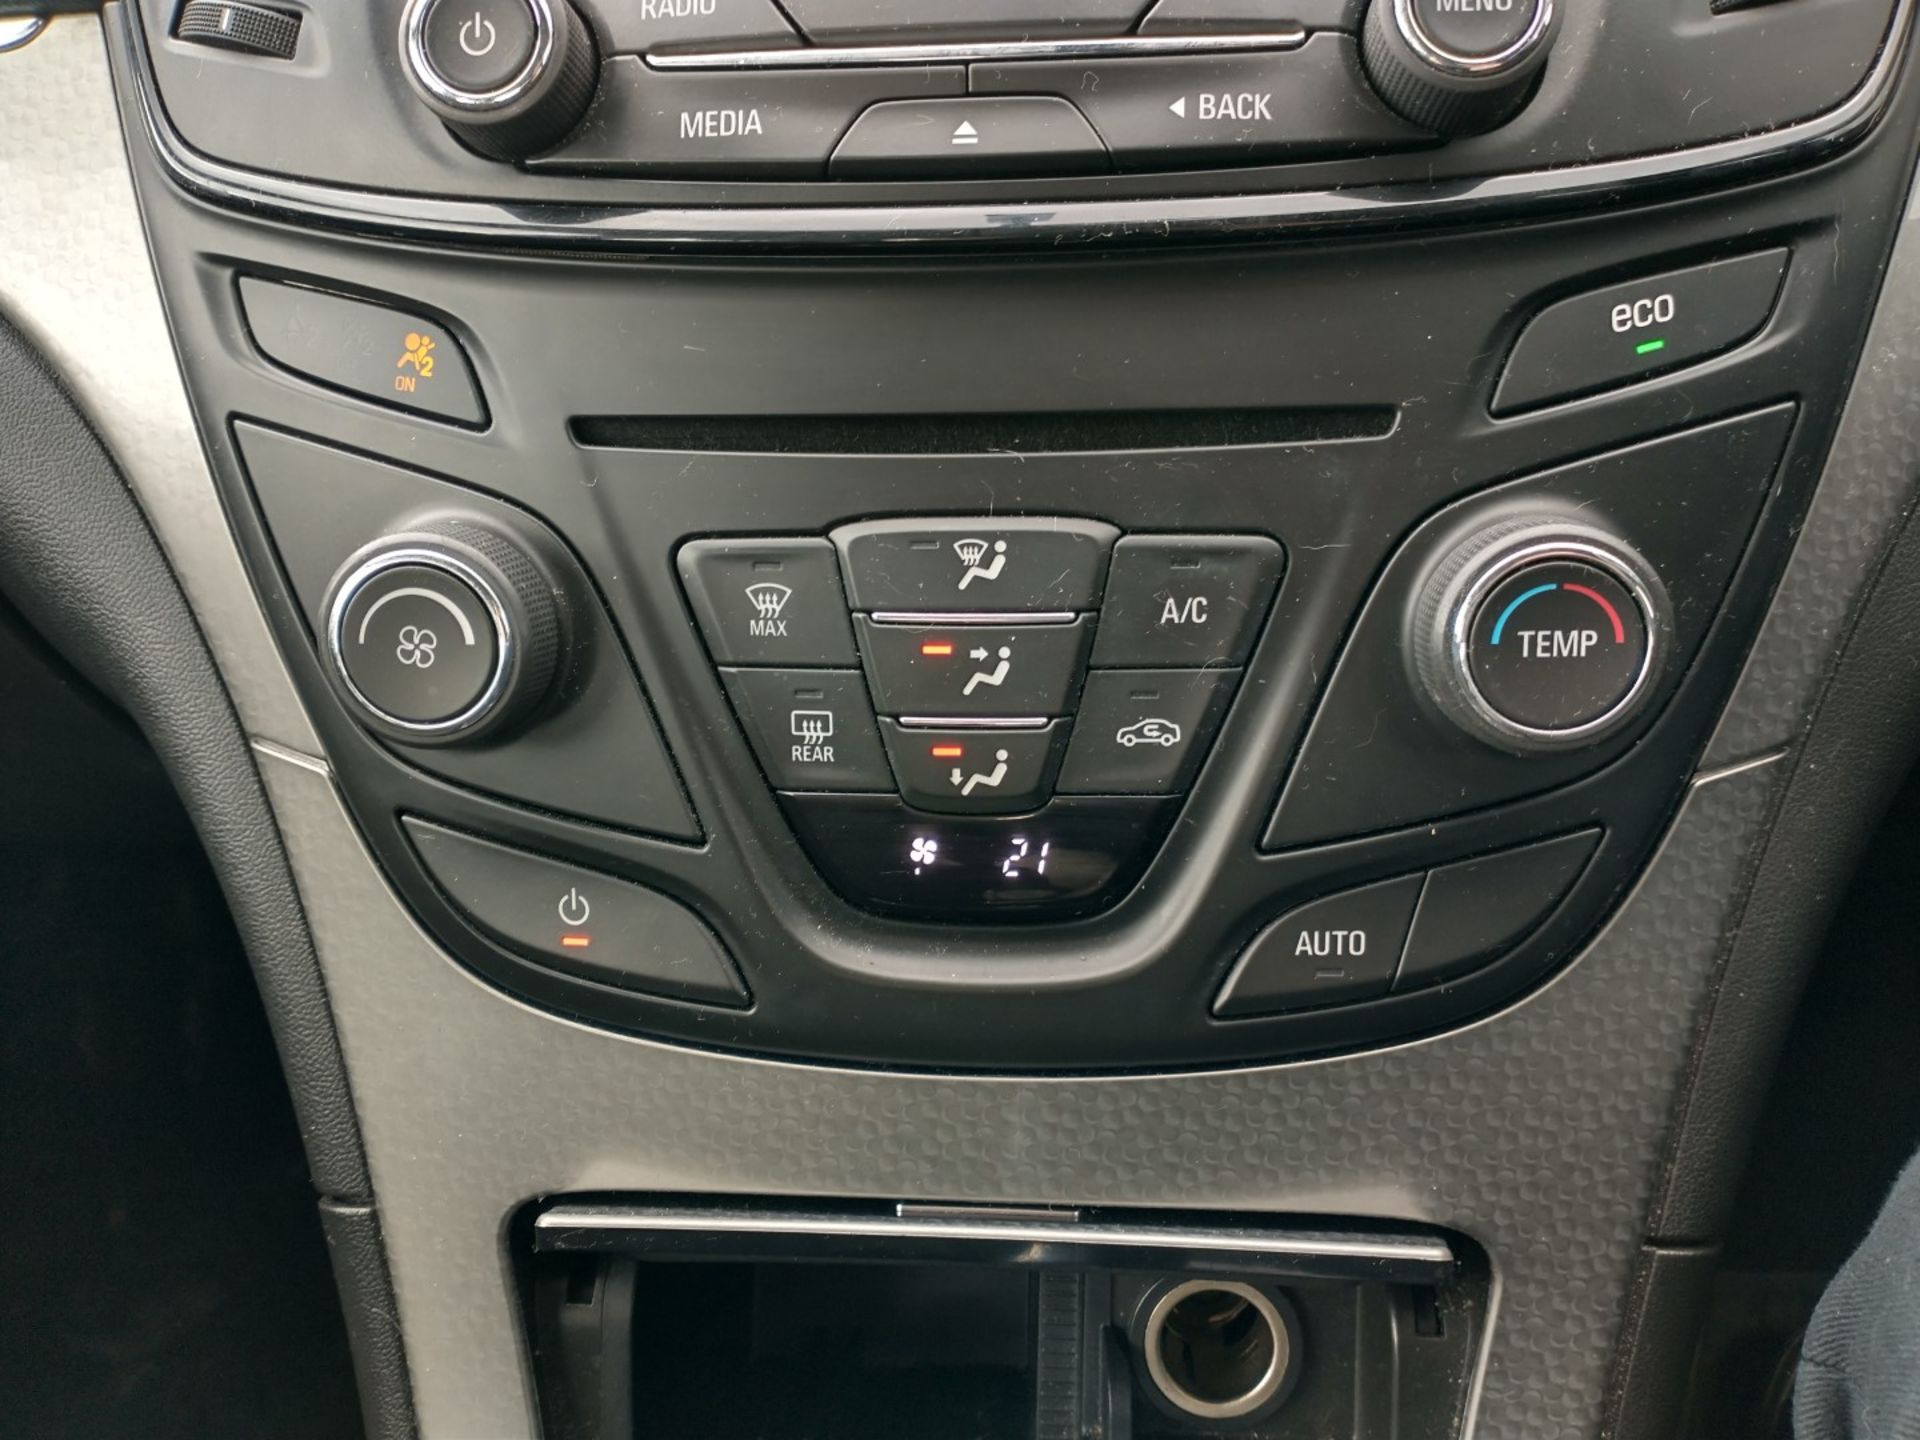 2014 Vauxhall Insignia 2.0 CDTI Design Nav 5 Door Hatchback - CL505 - NO VAT ON THE HAMMER - - Image 5 of 13